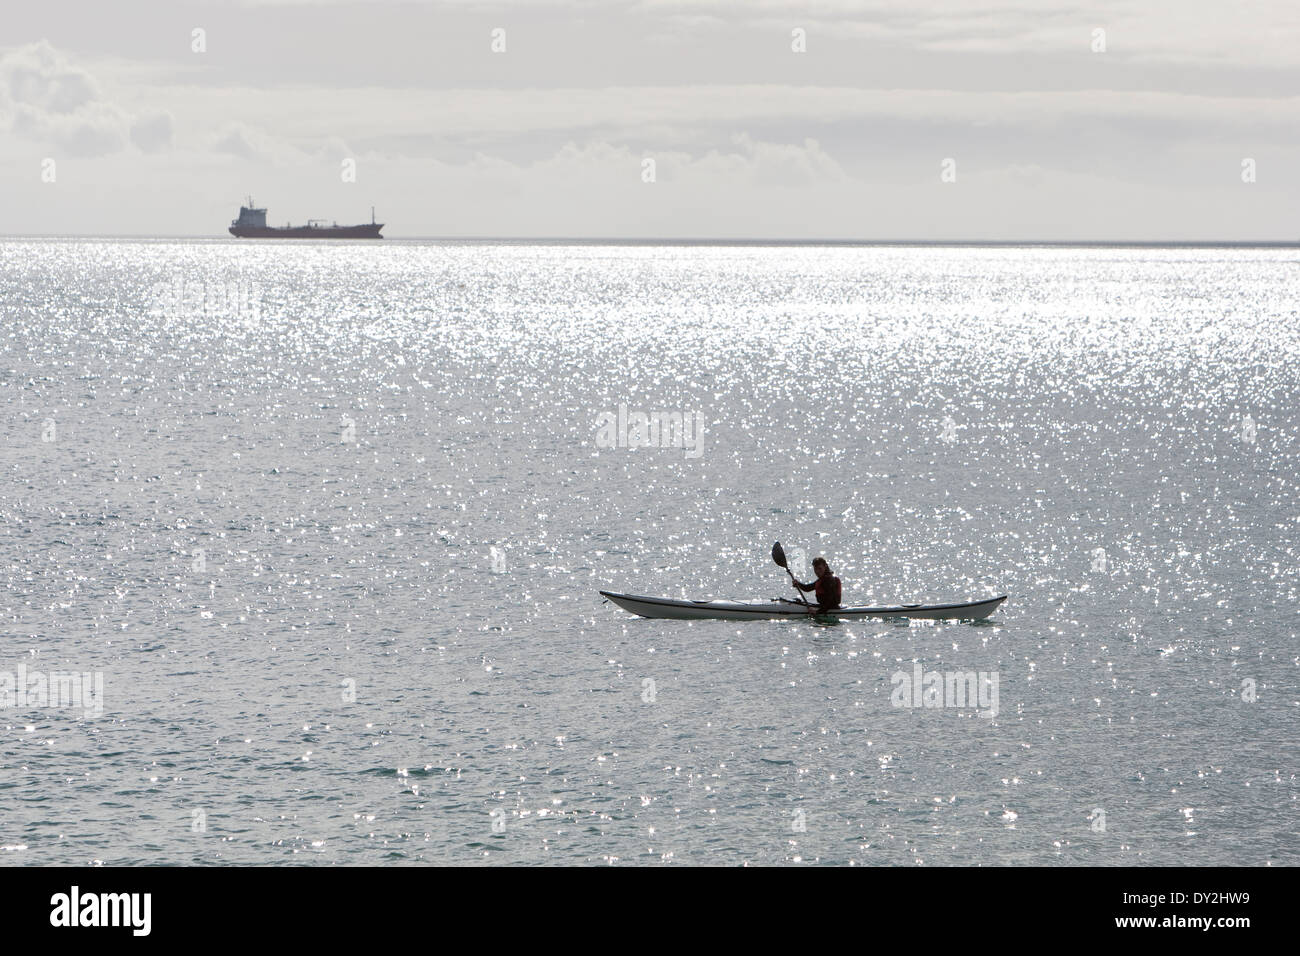 Ein Kajakfahrer sitzt in seinem Kajak Maenporth Strand, Falmouth, während ein Schiff am Horizont sitzt. Stockfoto